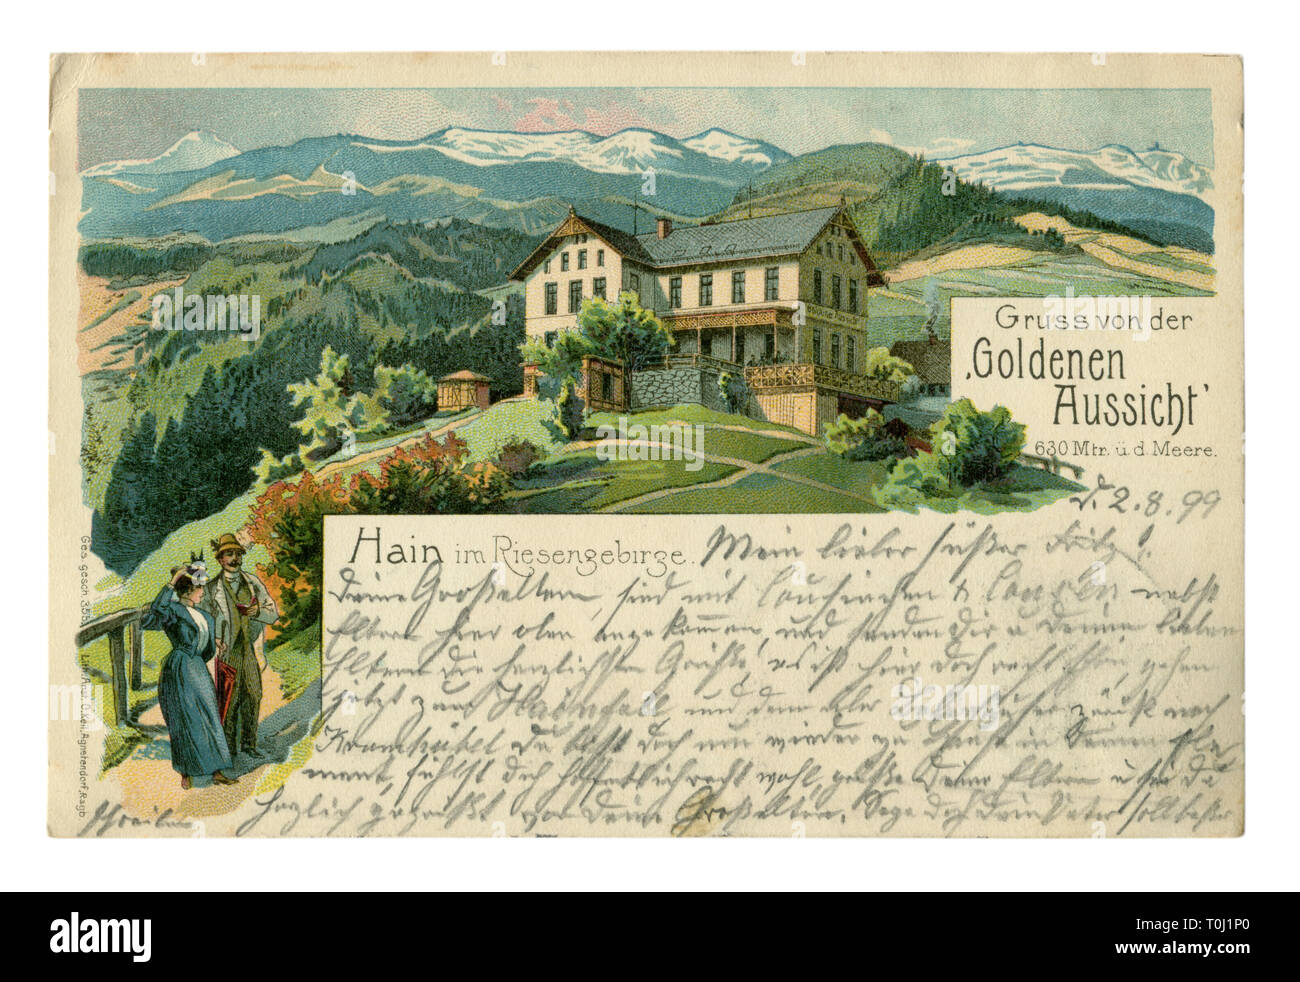 Carte postale publicité chromolithographic historique allemand : paysage de montagne avec l'hôtel 'Goldenen Aussicht'. Les touristes guest house. Le texte des lettres Banque D'Images